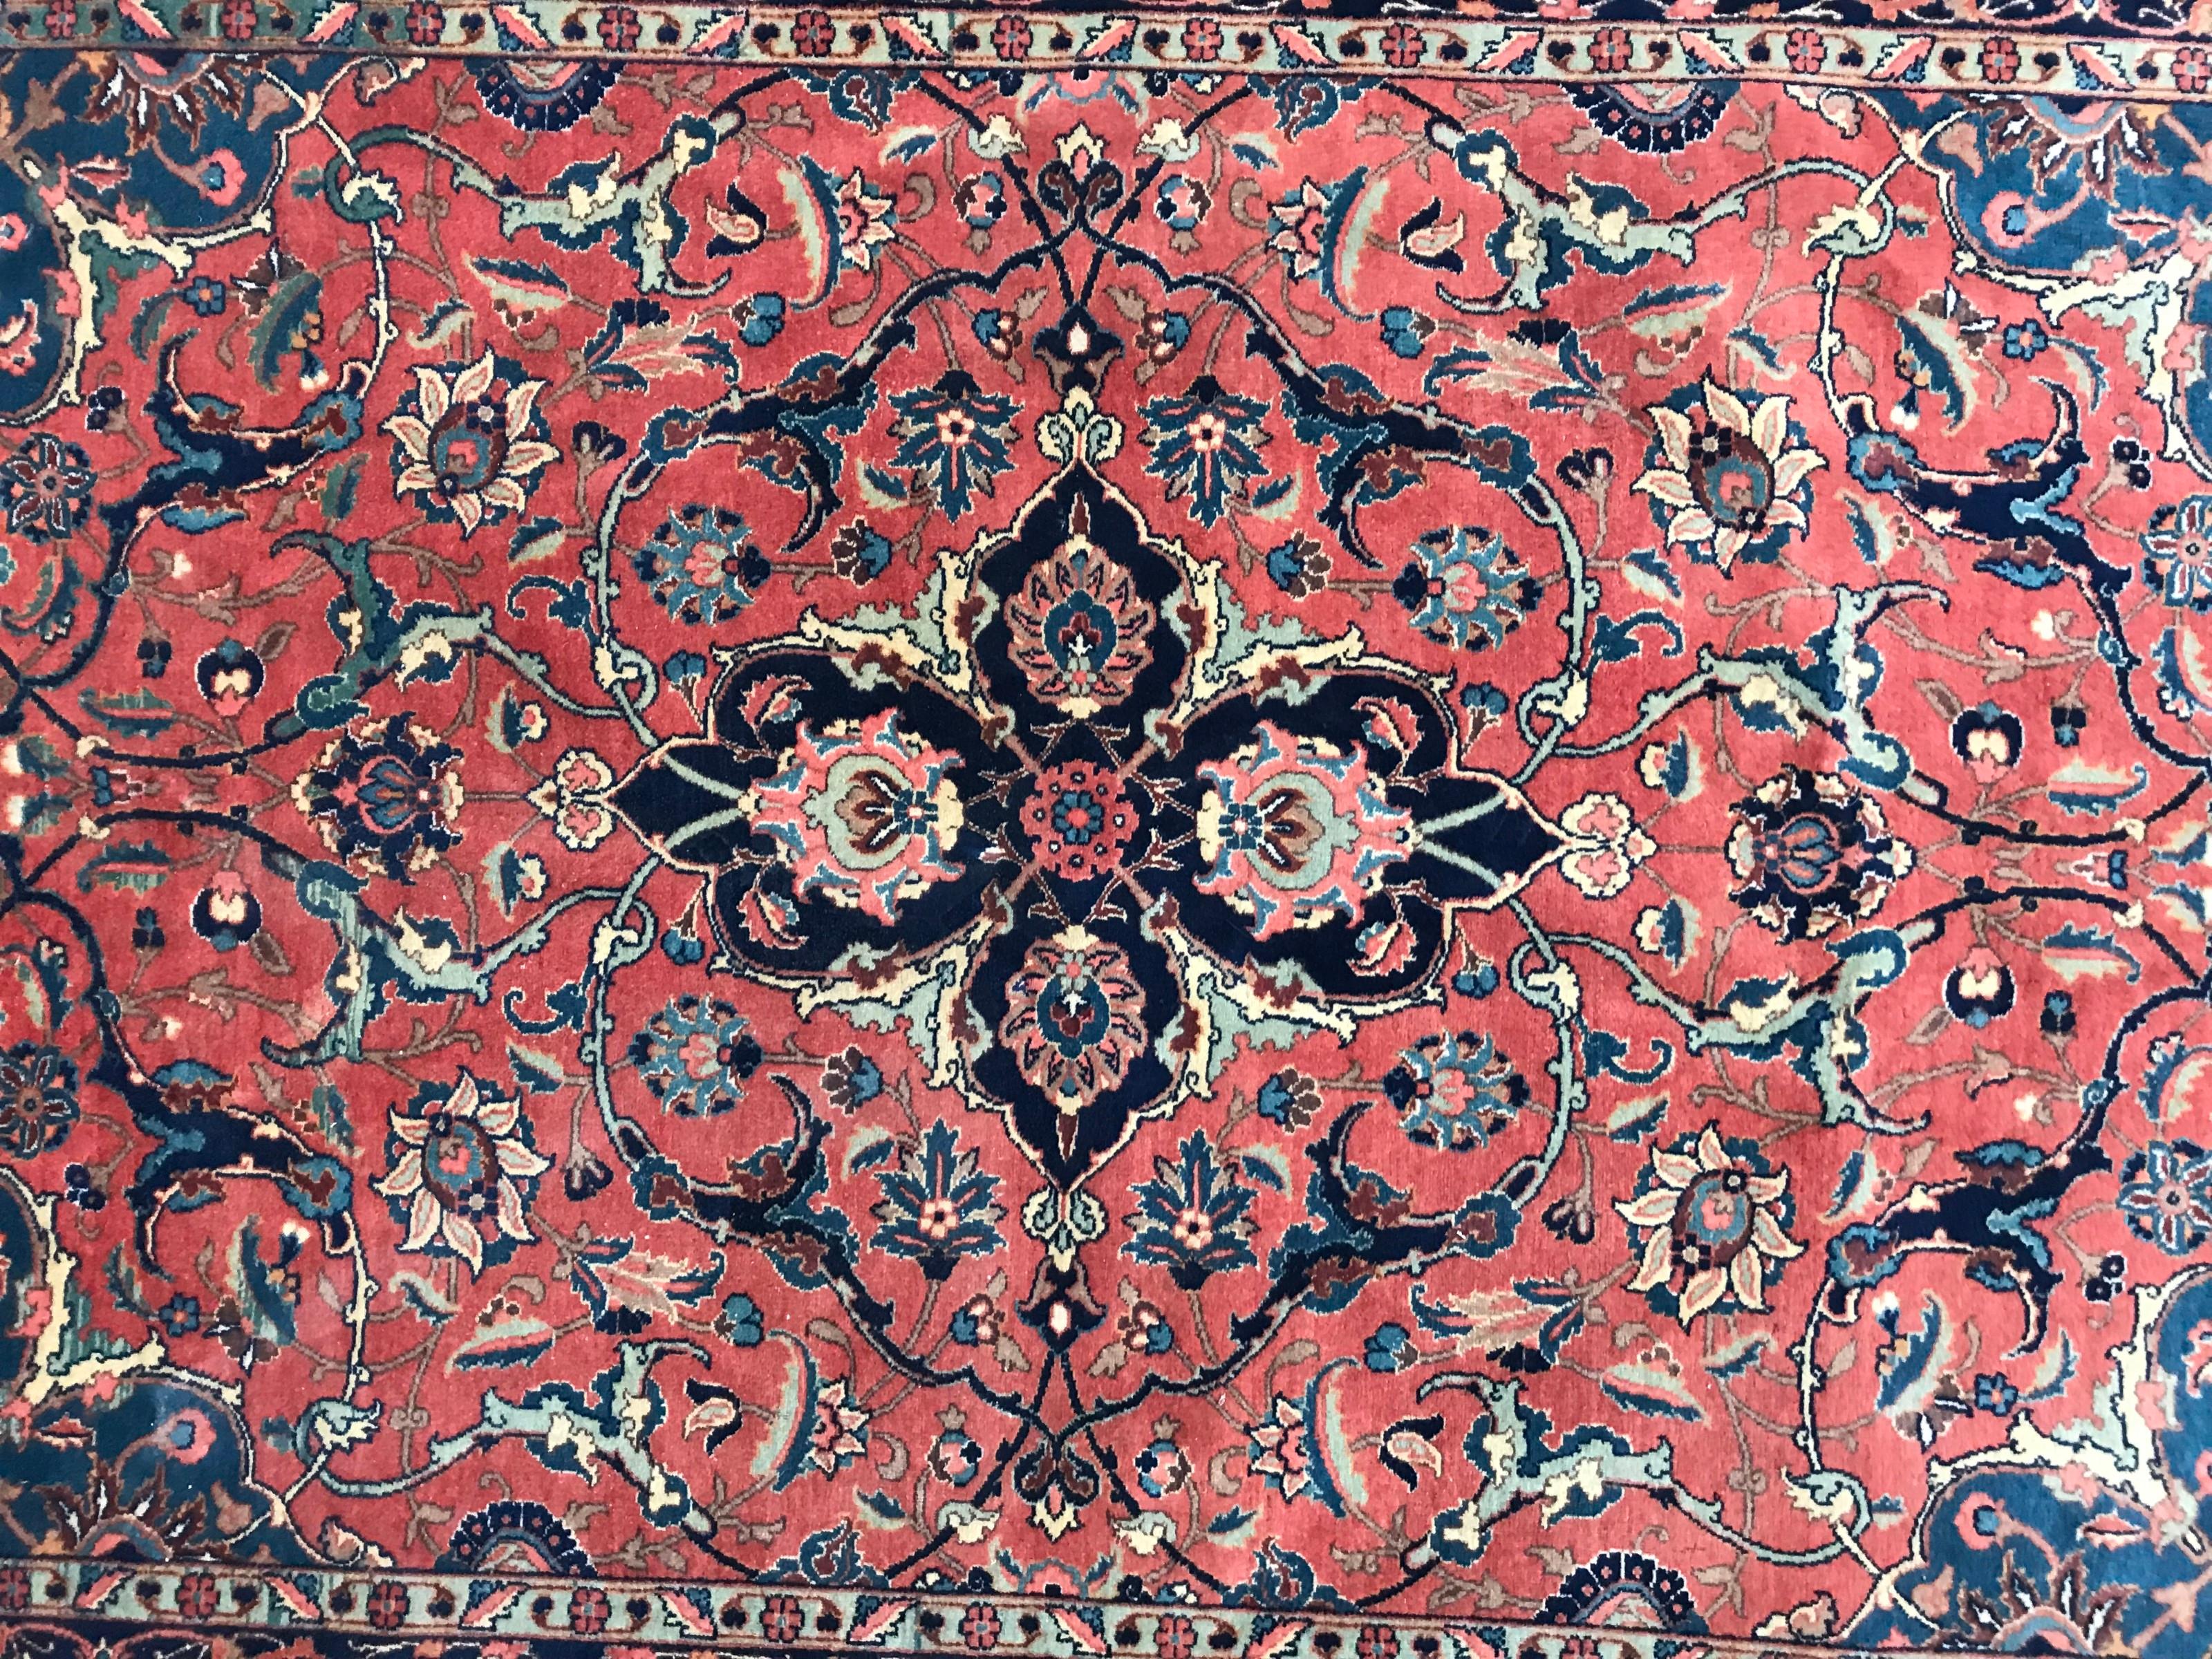 Exquisiter antiker Teppich mit einem atemberaubenden floralen Medaillonmuster in der Mitte und fesselnden natürlichen Farben, darunter Rot-, Blau- und Rosatöne. Sorgfältig von Hand geknüpft mit Wollsamt auf einer strapazierfähigen Baumwollgrundlage.